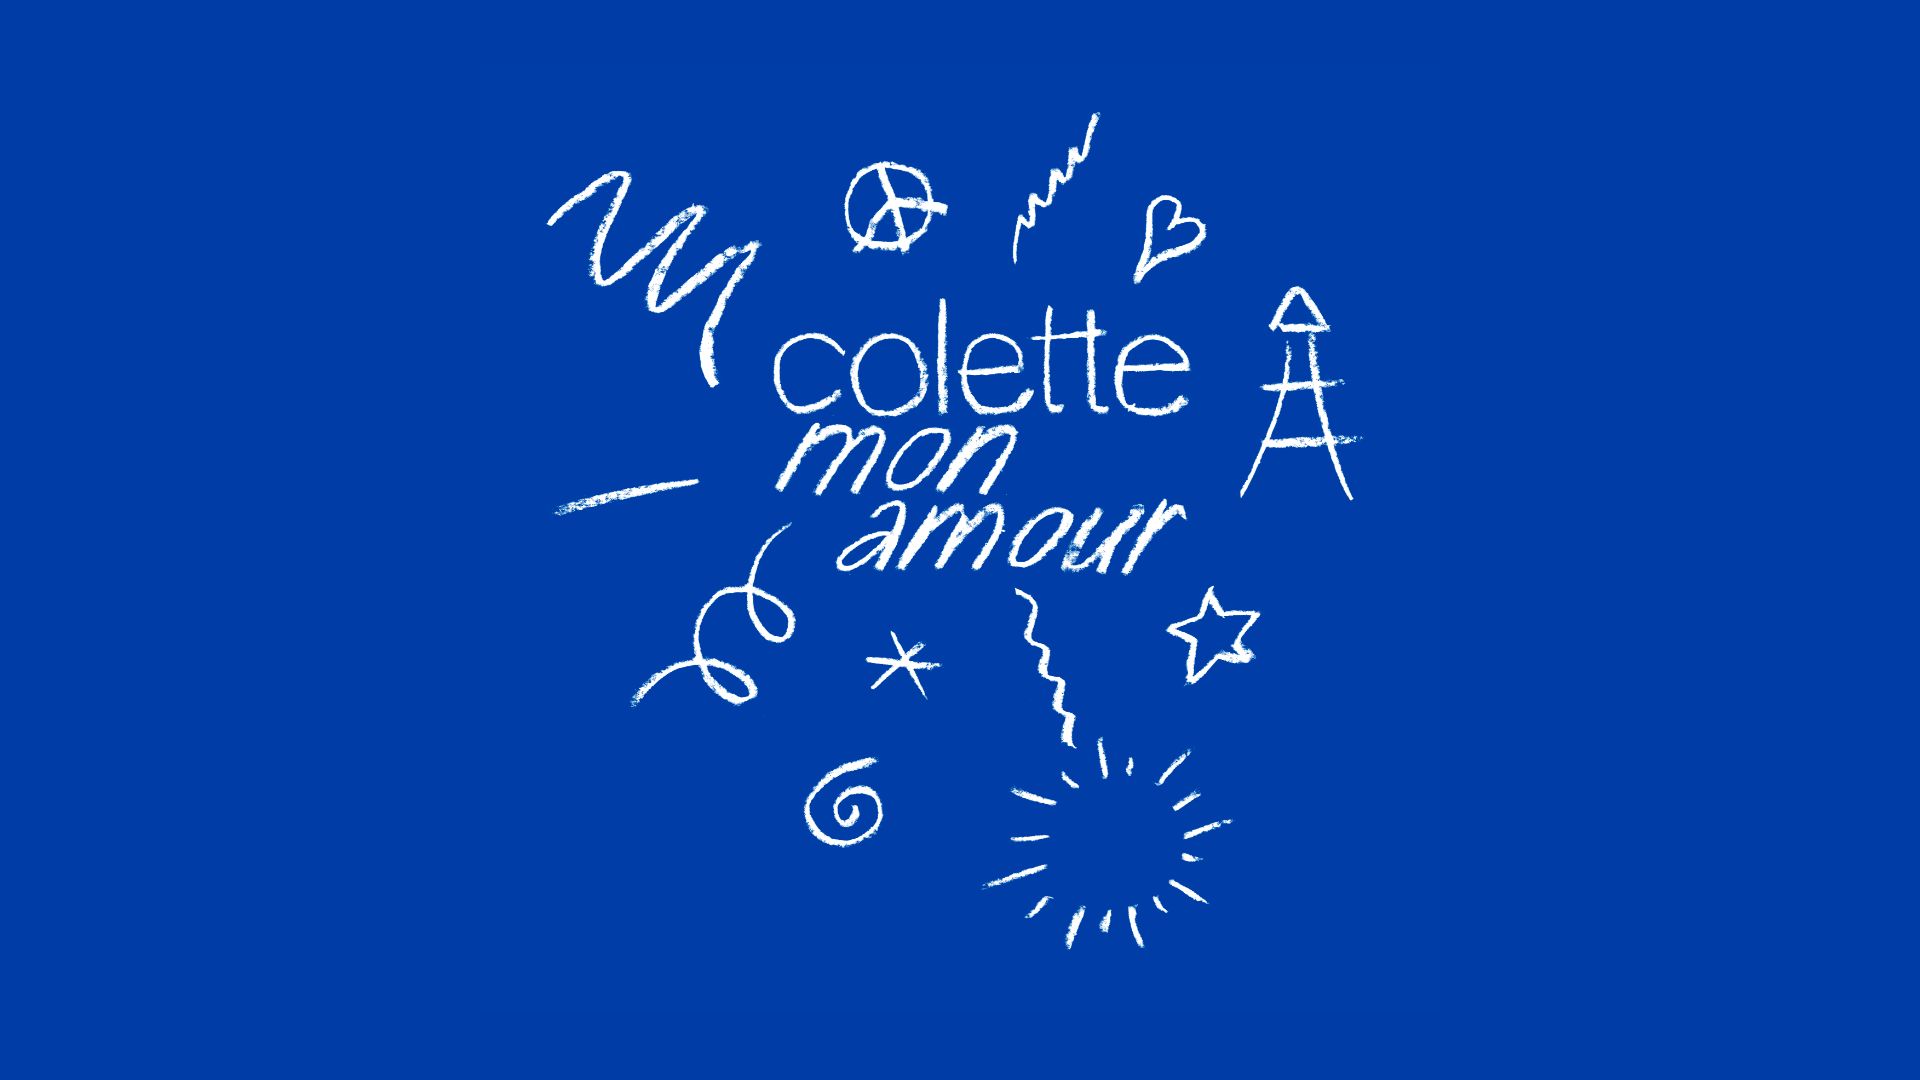 Website status colette.fr is   ONLINE